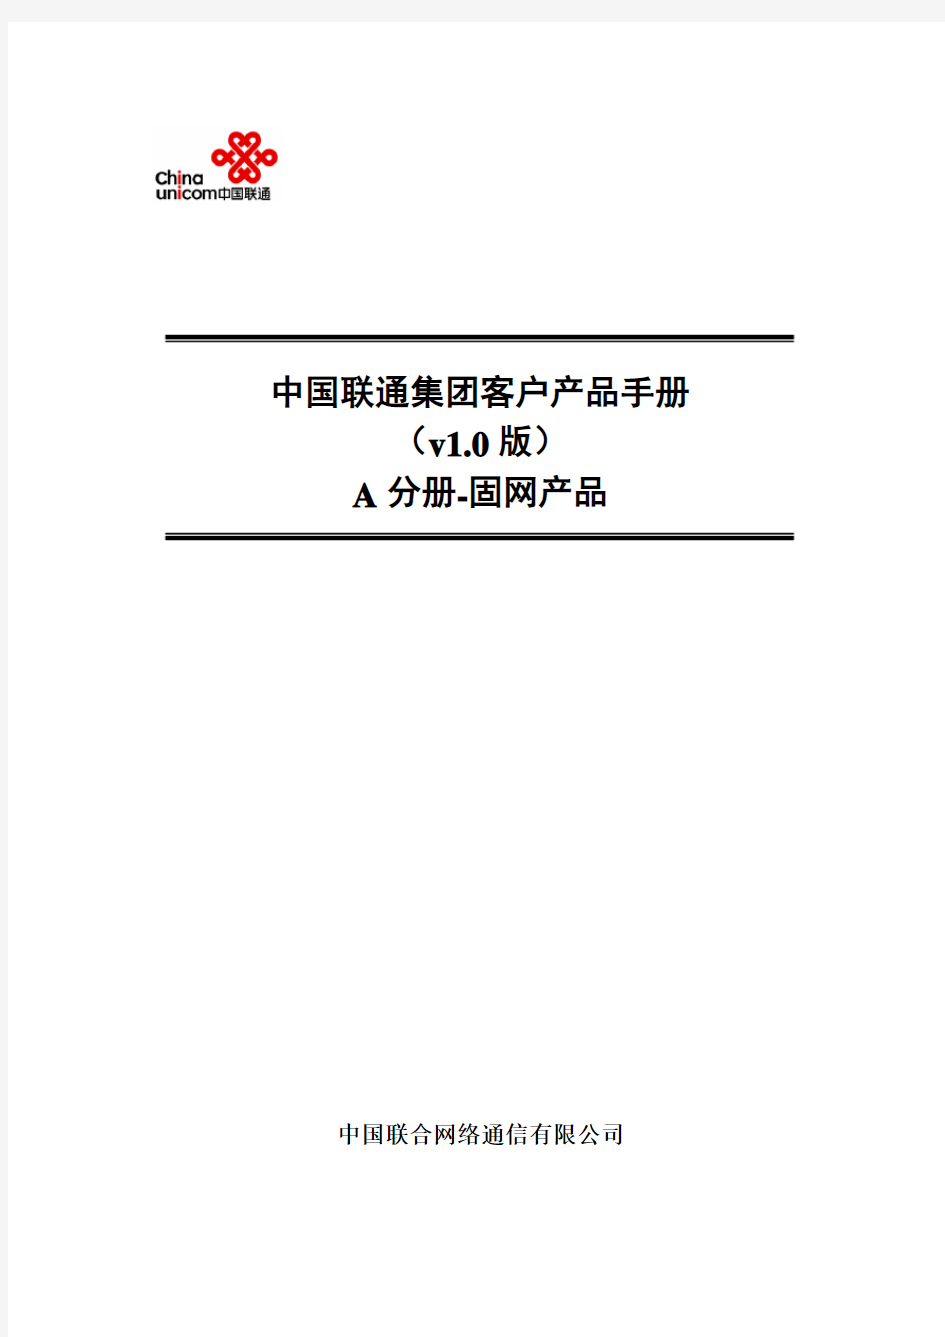 中国联通集团客户产品手册-a分册-固网v1.2